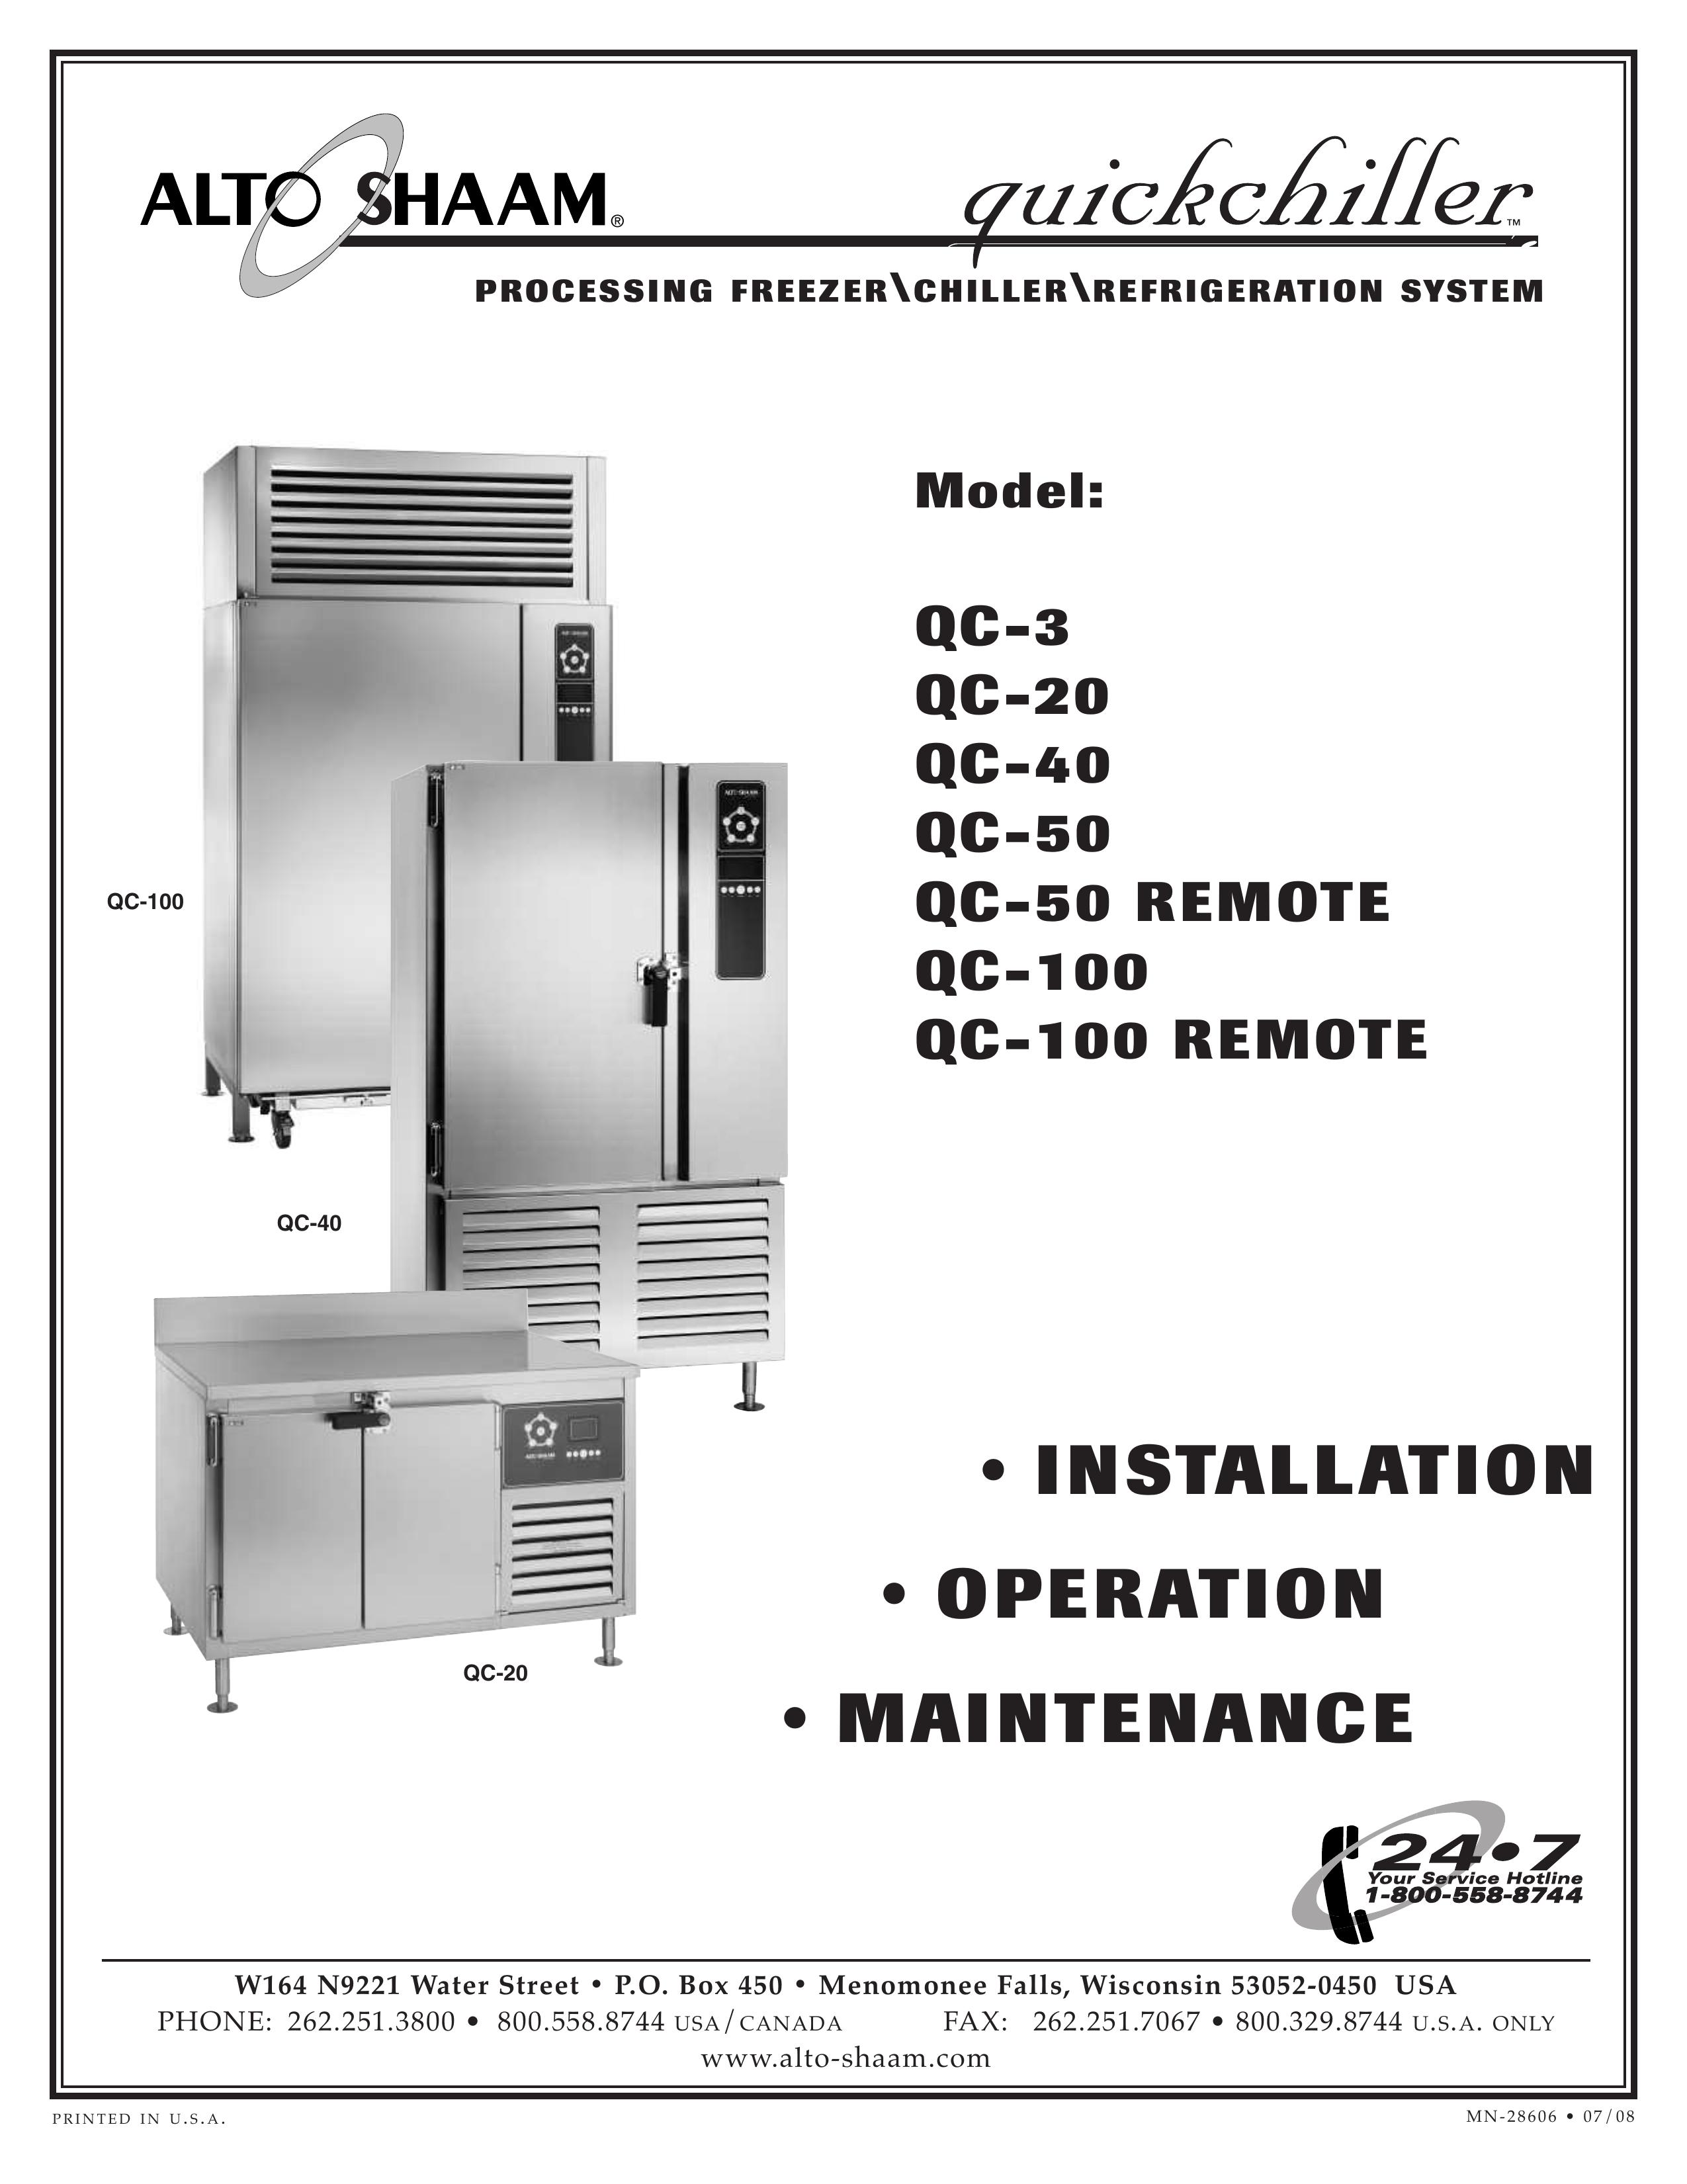 Alto-Shaam QC-100 Refrigerator User Manual